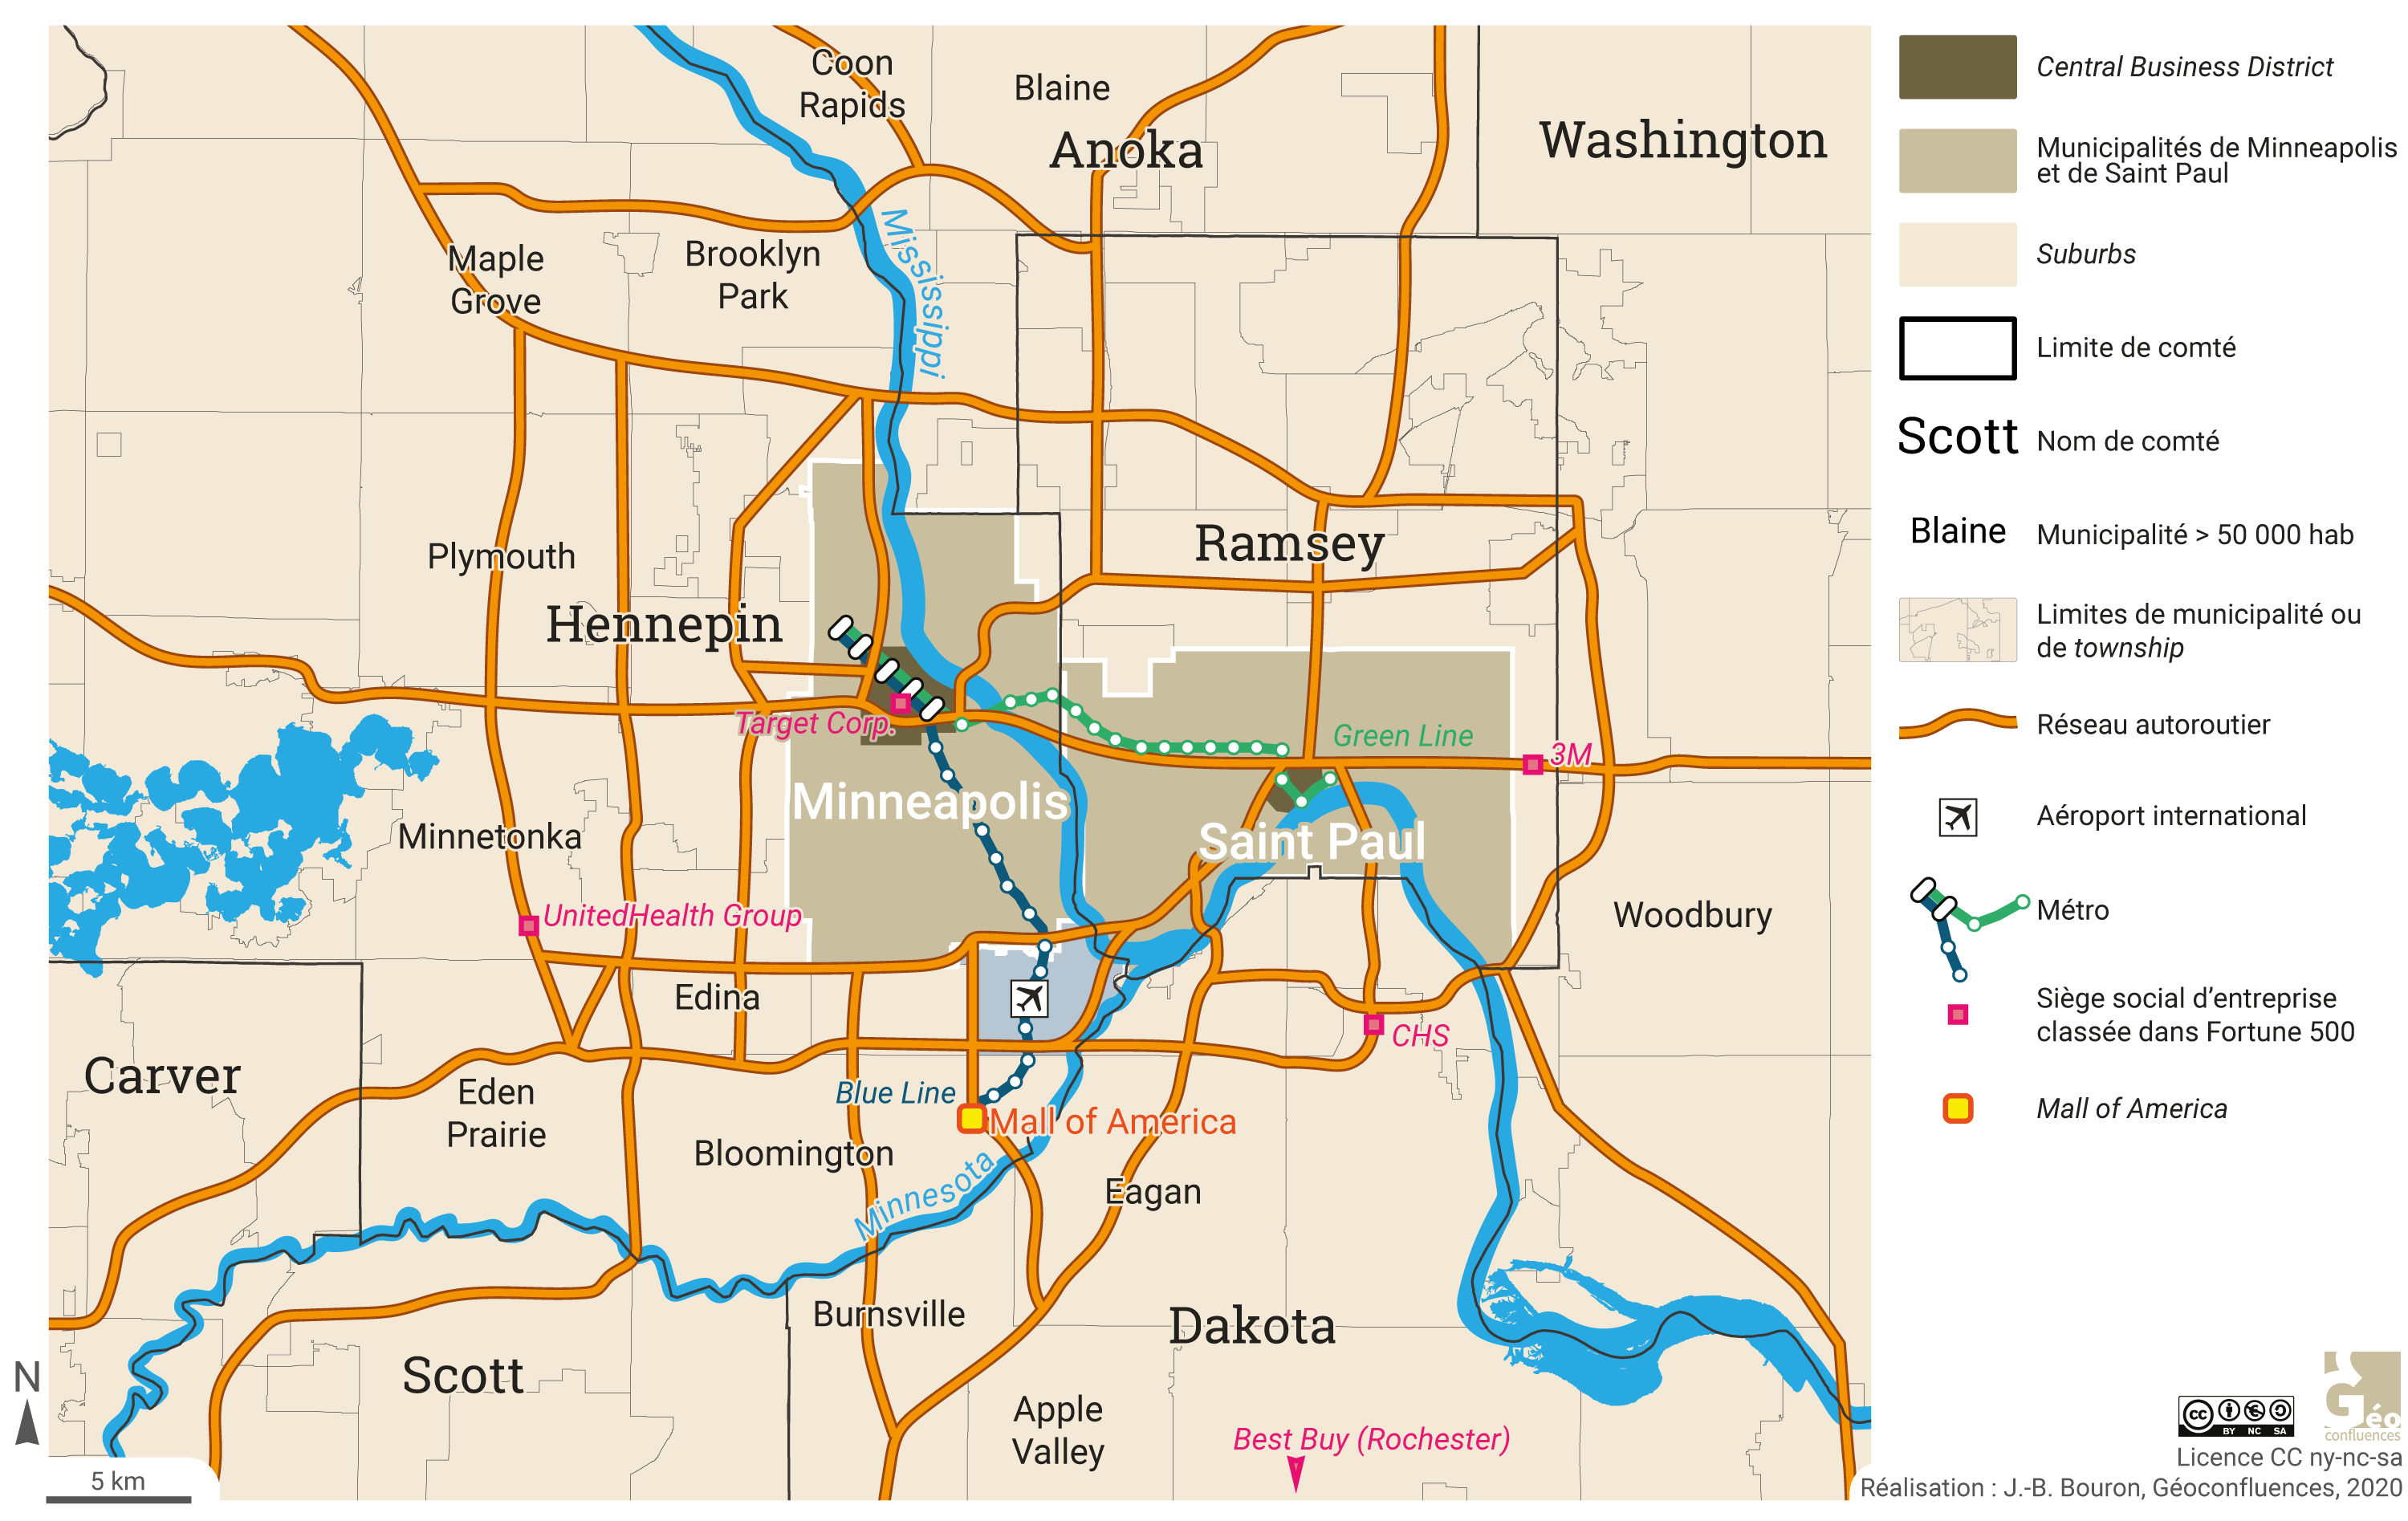 Réseaux et polycentrisme à l’échelle du cœur de la métropole Minneapolis Saint Paul (haute définition)  (États-Unis)